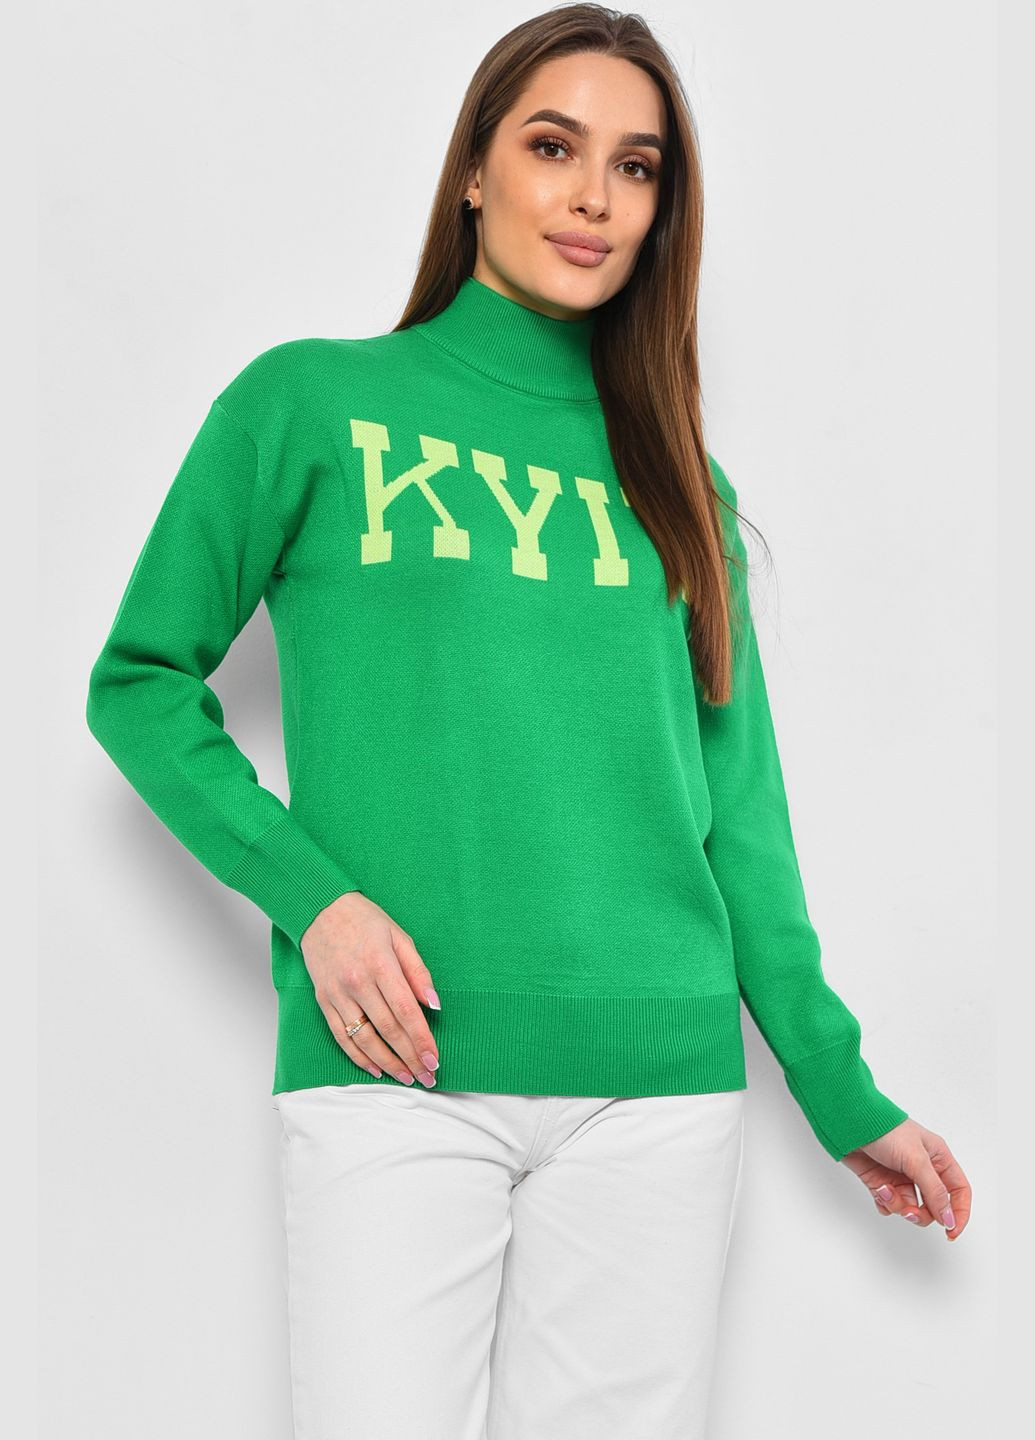 Зеленый зимний свитер женский зеленого цвета пуловер Let's Shop